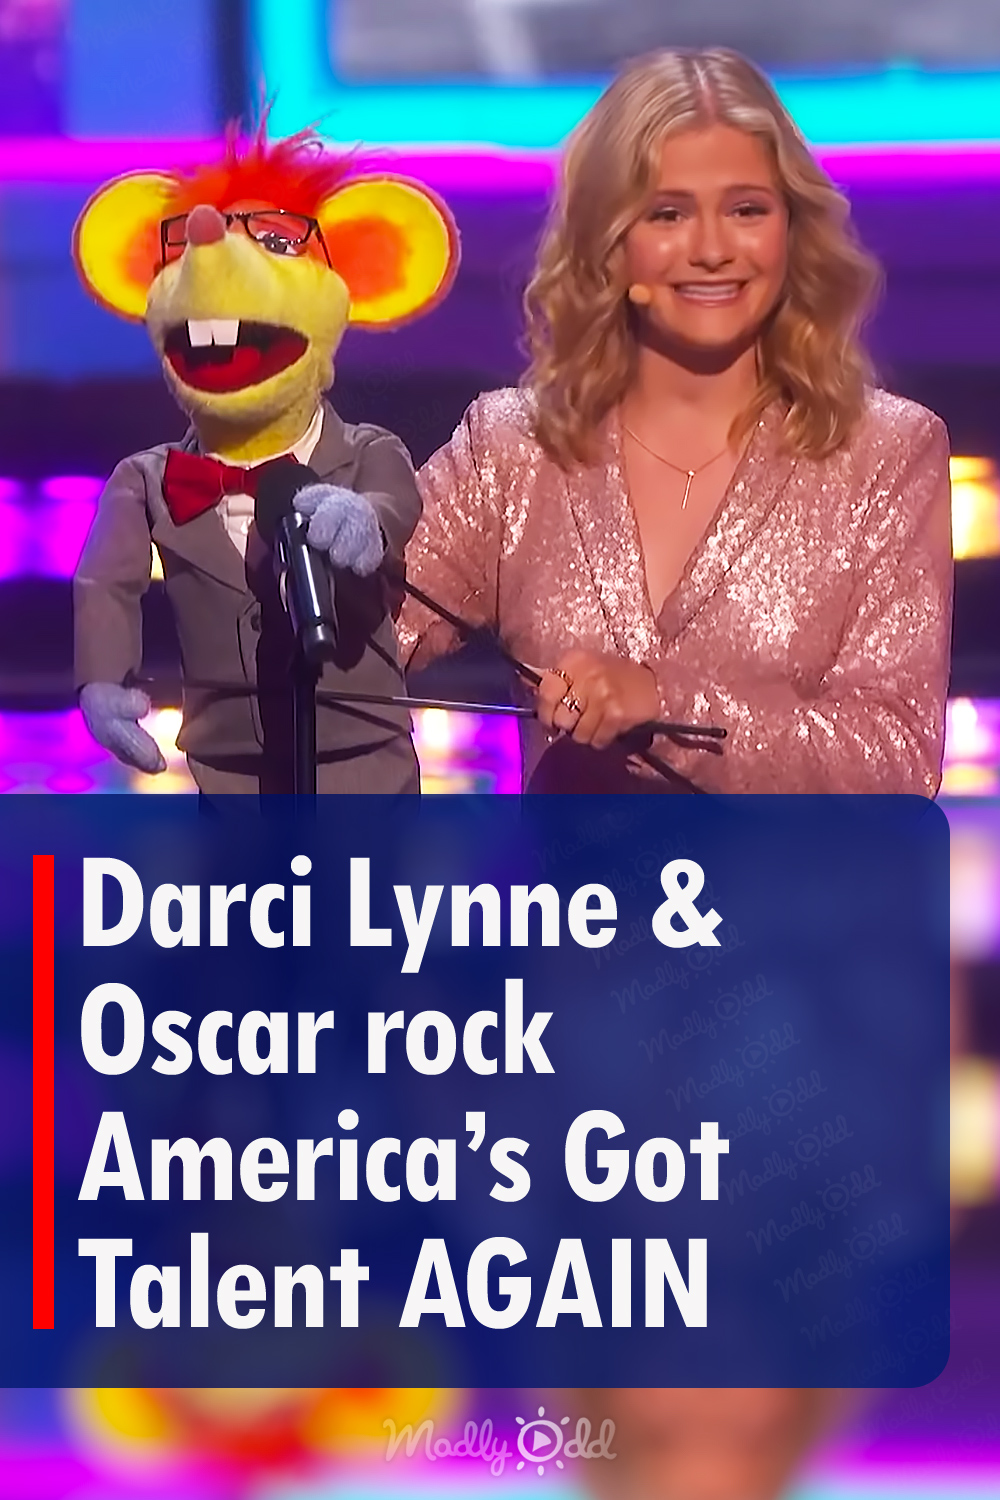 Darci Lynne & Oscar rock America’s Got Talent AGAIN